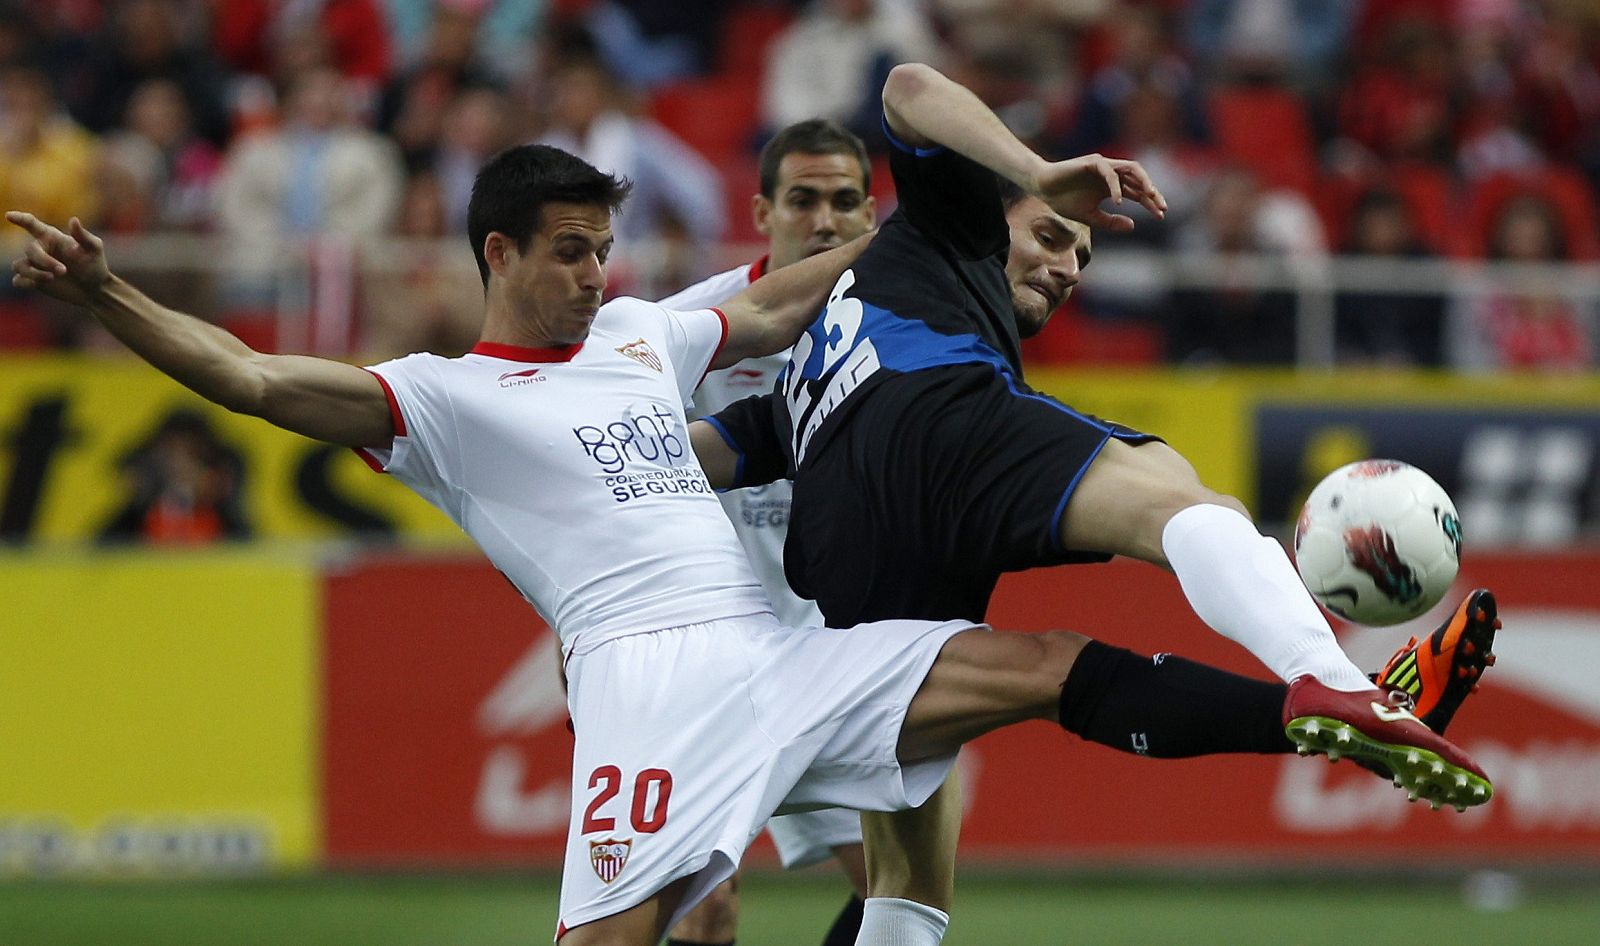 El delantero del Sevilla Manu del Moral (i) pelea un balón con el del Rayo Vallecano Andrija Delibasic.